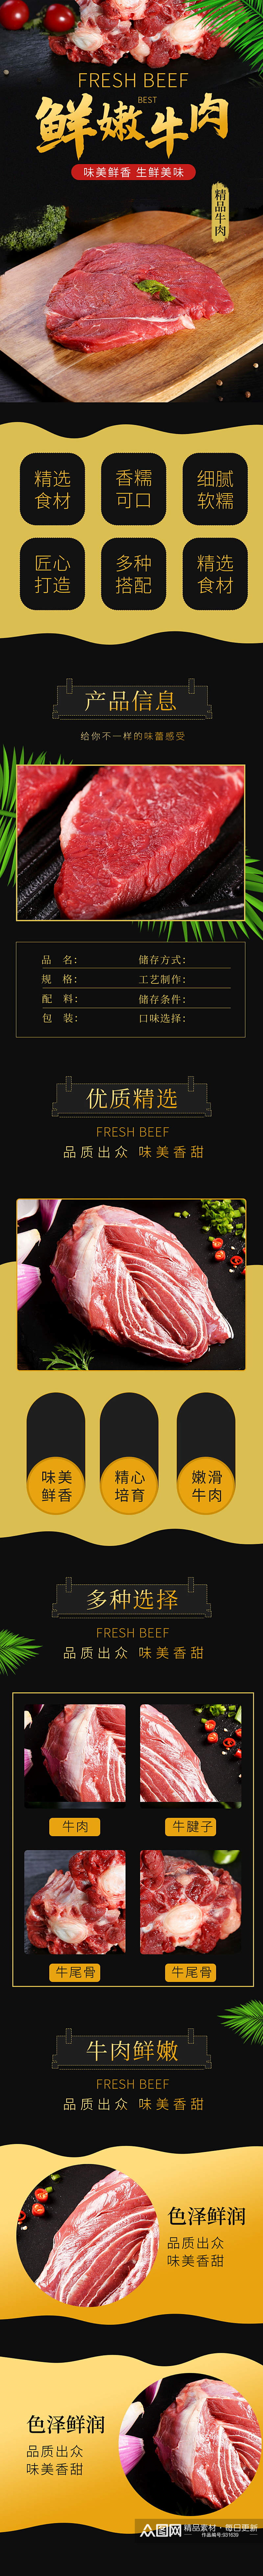 简约新鲜牛肉美食详情页素材